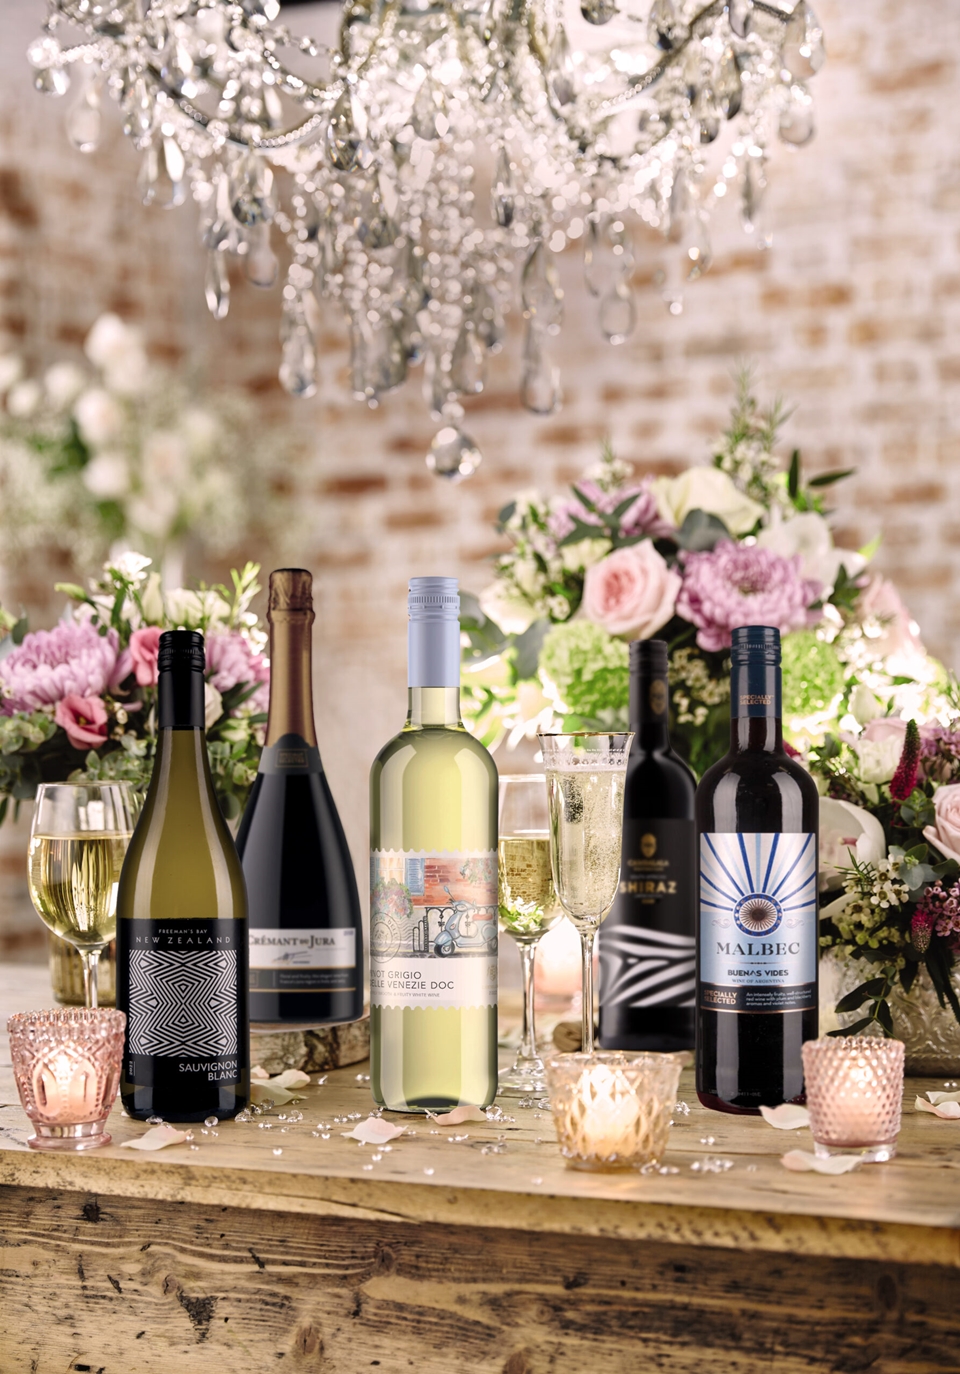 영국의 슈퍼마켓 체인 Aldi가 마스터 오브 와인 '샘 캐포른'과 함께 결혼식에 선택하기 좋은 와인 및 팁을 소개했다. (사진=Aldi)